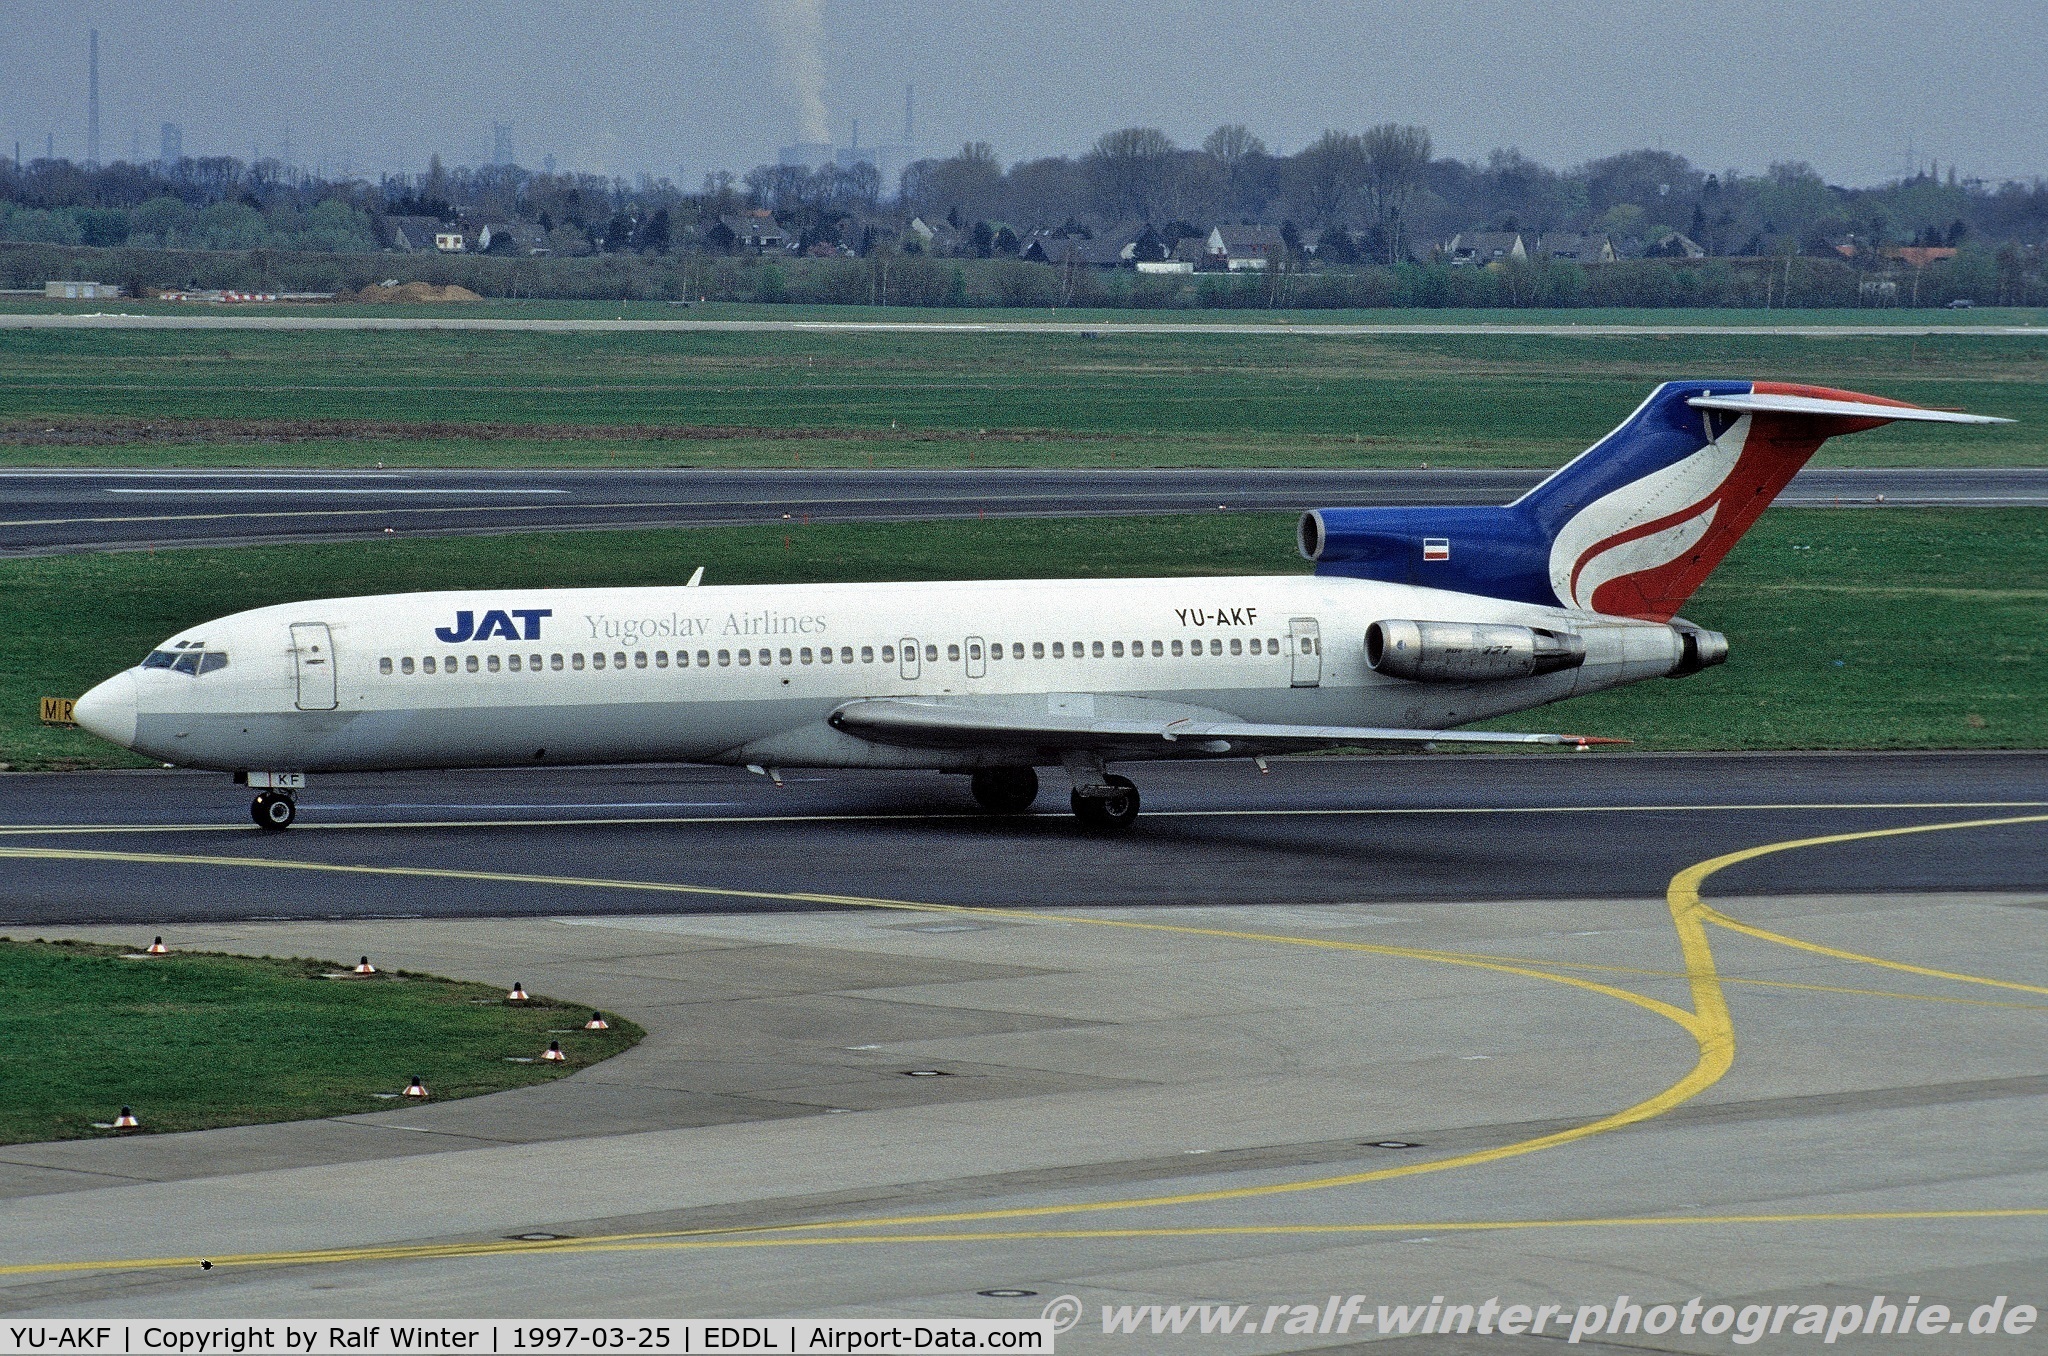 YU-AKF, 1974 Boeing 727-2H9 C/N 21038, Boeing 727-2H9 - JU JAT JAT Yugoslav Airlines - 21038 - YU-AKF - 25.03.1997 - DUS